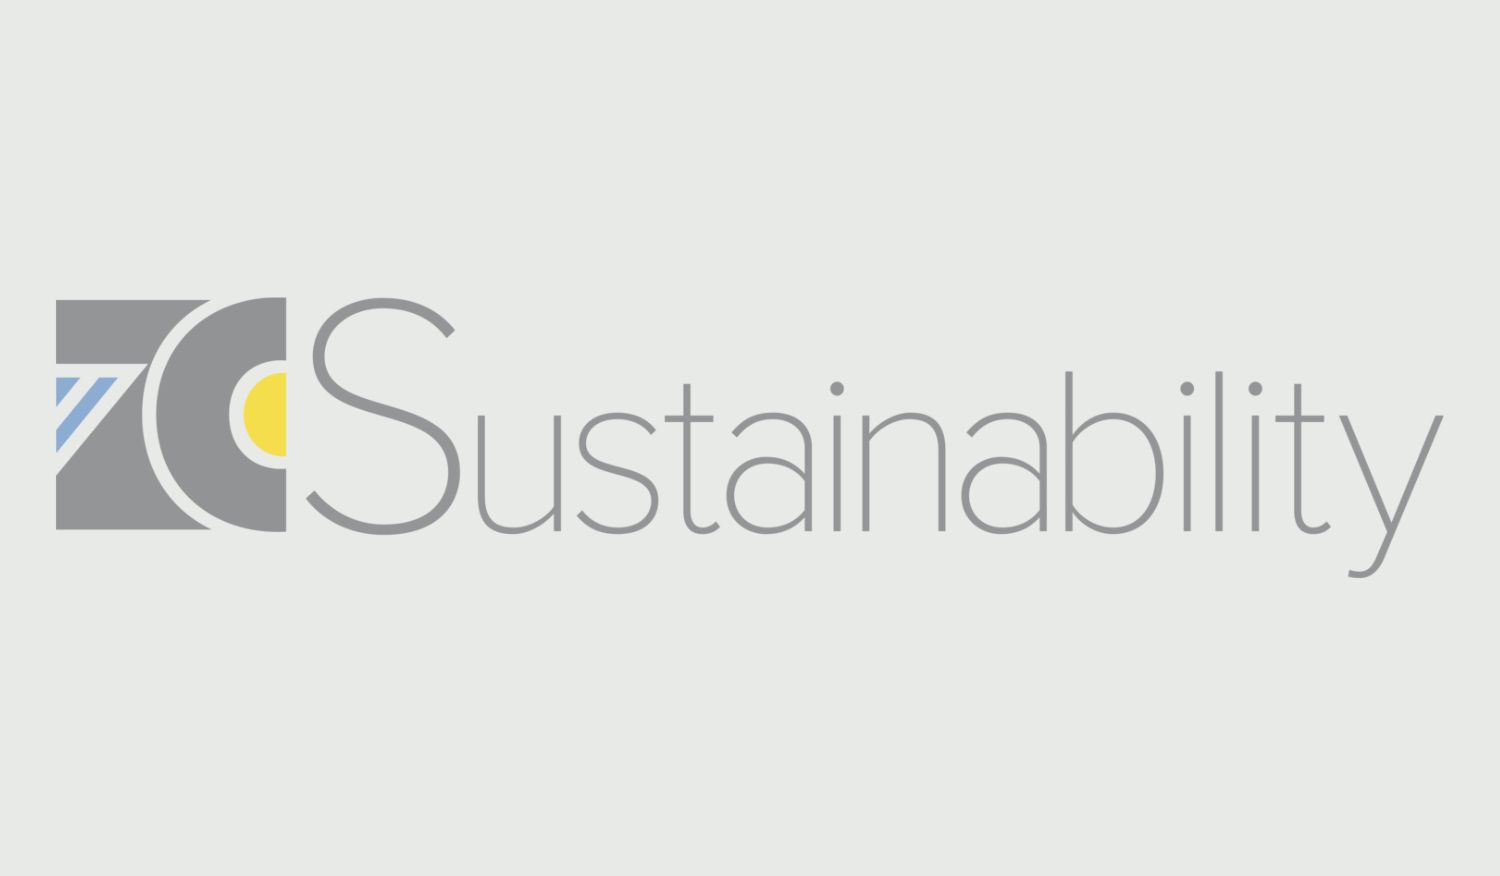 zc sustainability logo